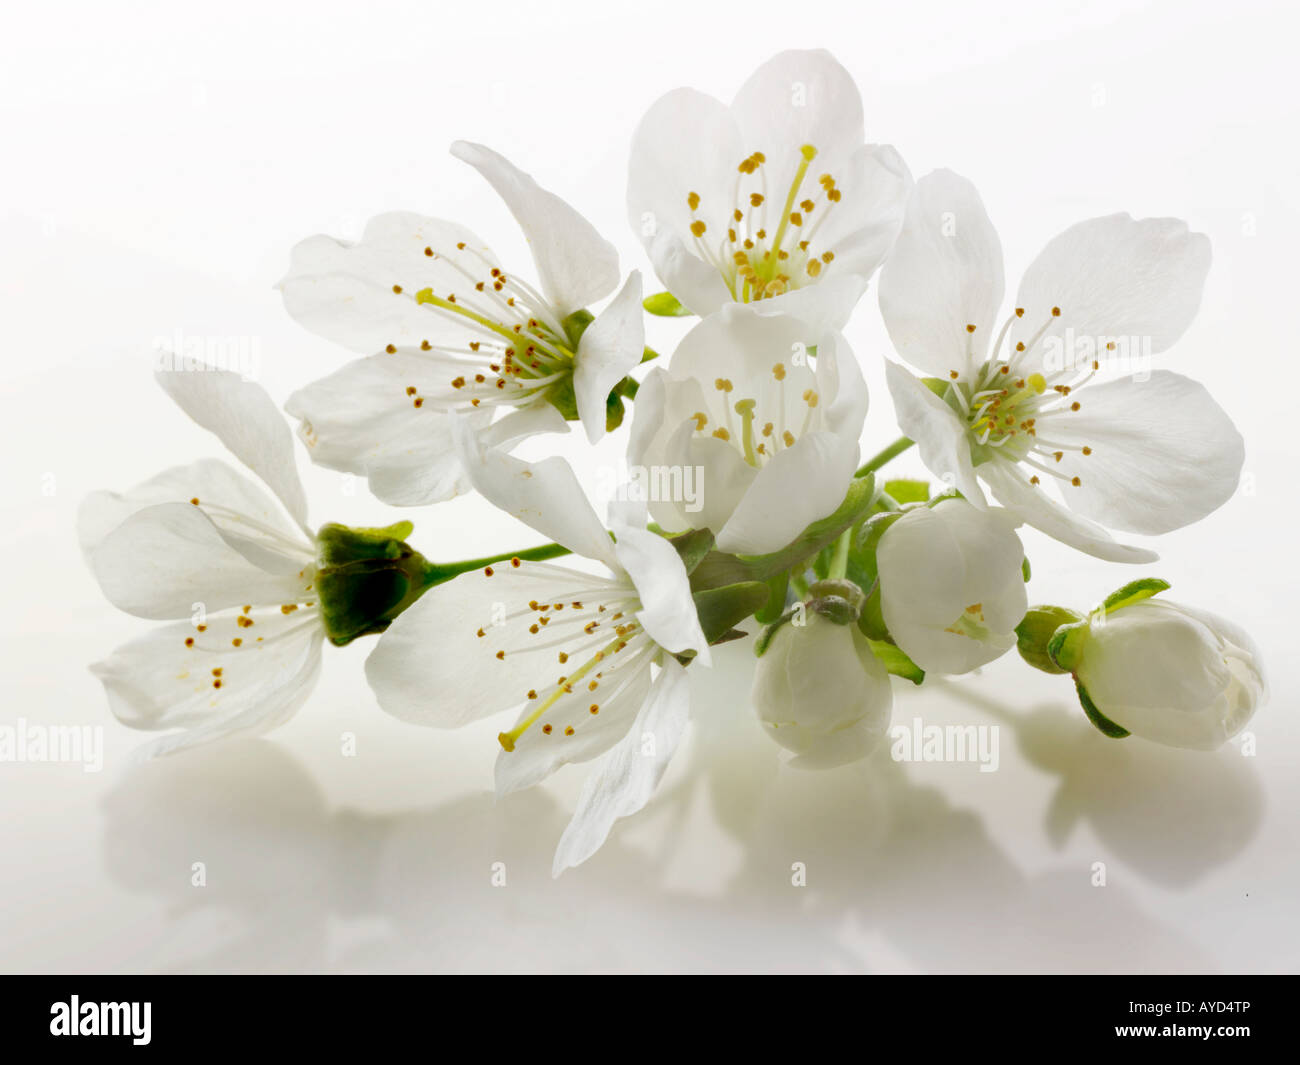 Photos de fleurs de cerisier blanc frais, les fleurs et les pétales de frais un cerisier Banque D'Images